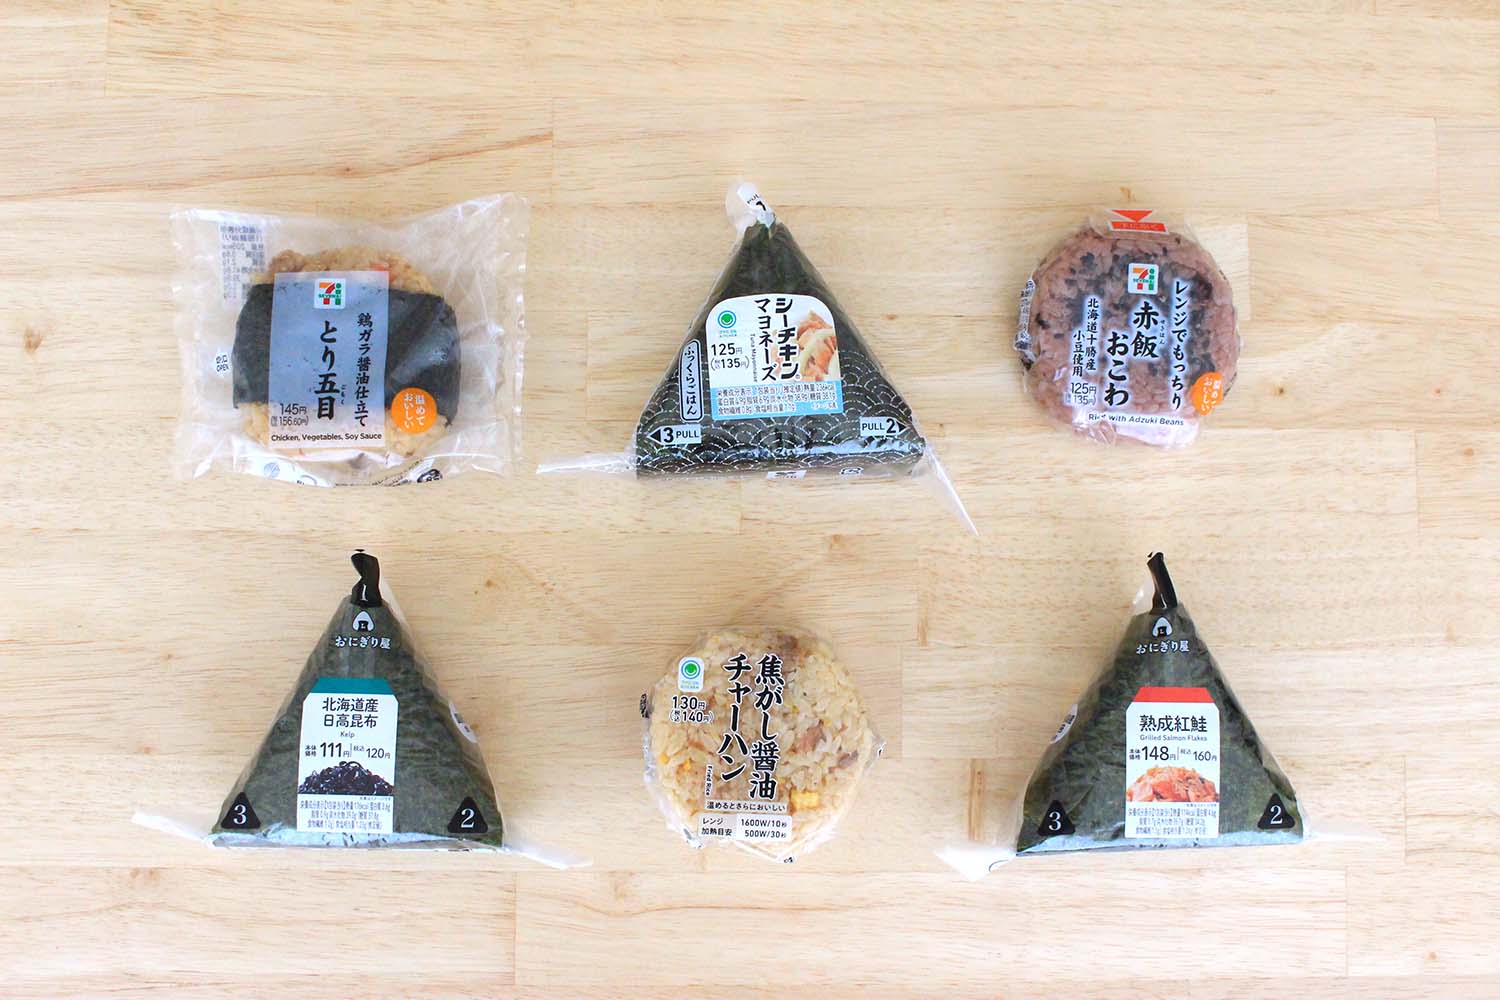 【日本必吃】超商御飯糰的美味吃法 | 傳授您無論是誰皆能優雅打開包裝的秘訣！